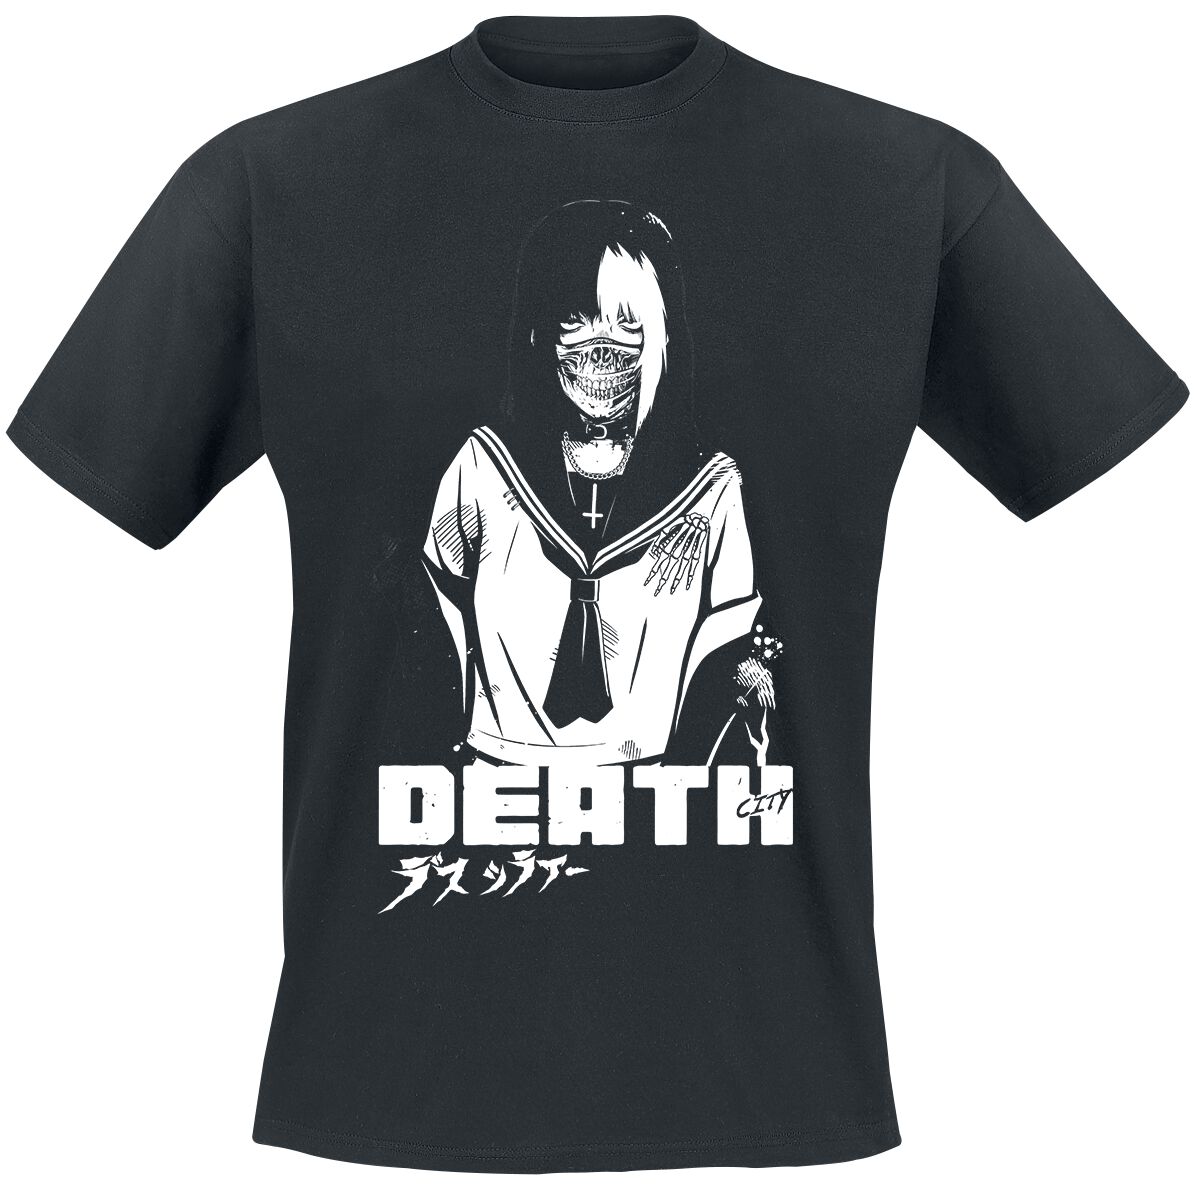 Zombie Makeout Club T-Shirt - ZMC - Death - S bis XXL - für Männer - Größe S - schwarz  - Lizenzierter Fanartikel